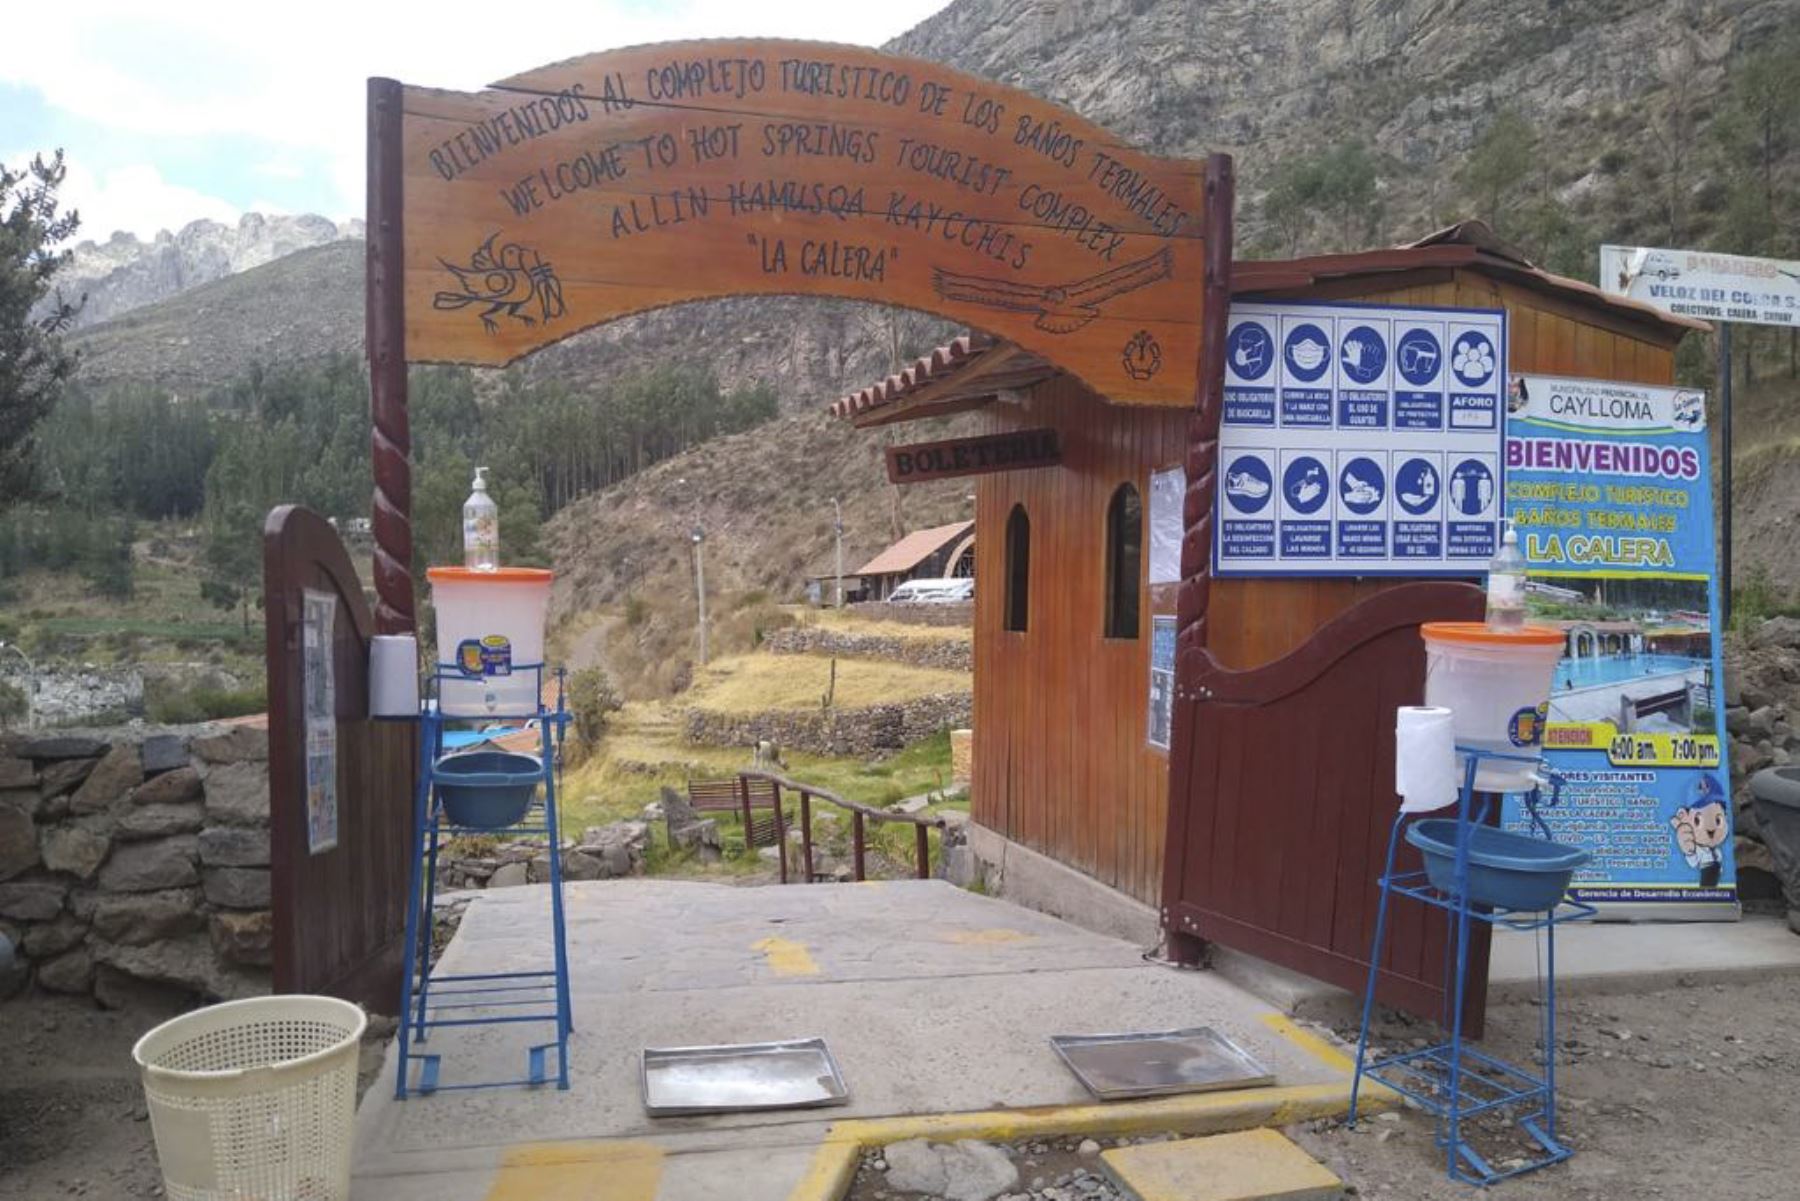 Los turistas que llegan al valle del Colca (Arequipa) ya pueden visitar las aguas termales La Calera. Foto: ANDINA/Difusión